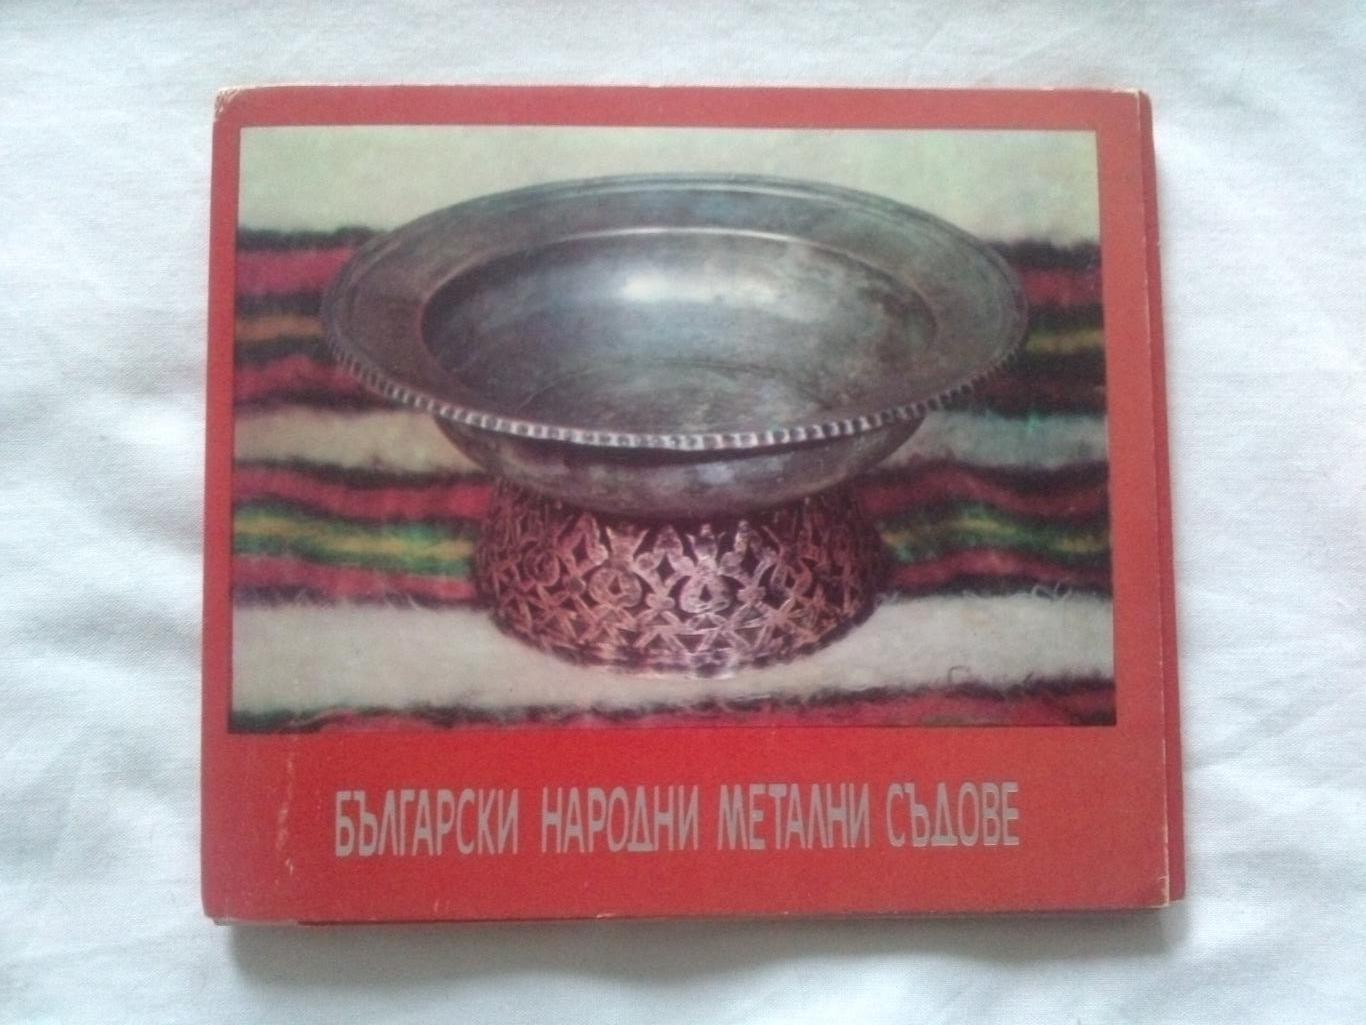 Болгарская народная металлическая утварь 1975 г. полный набор - 21 открытка